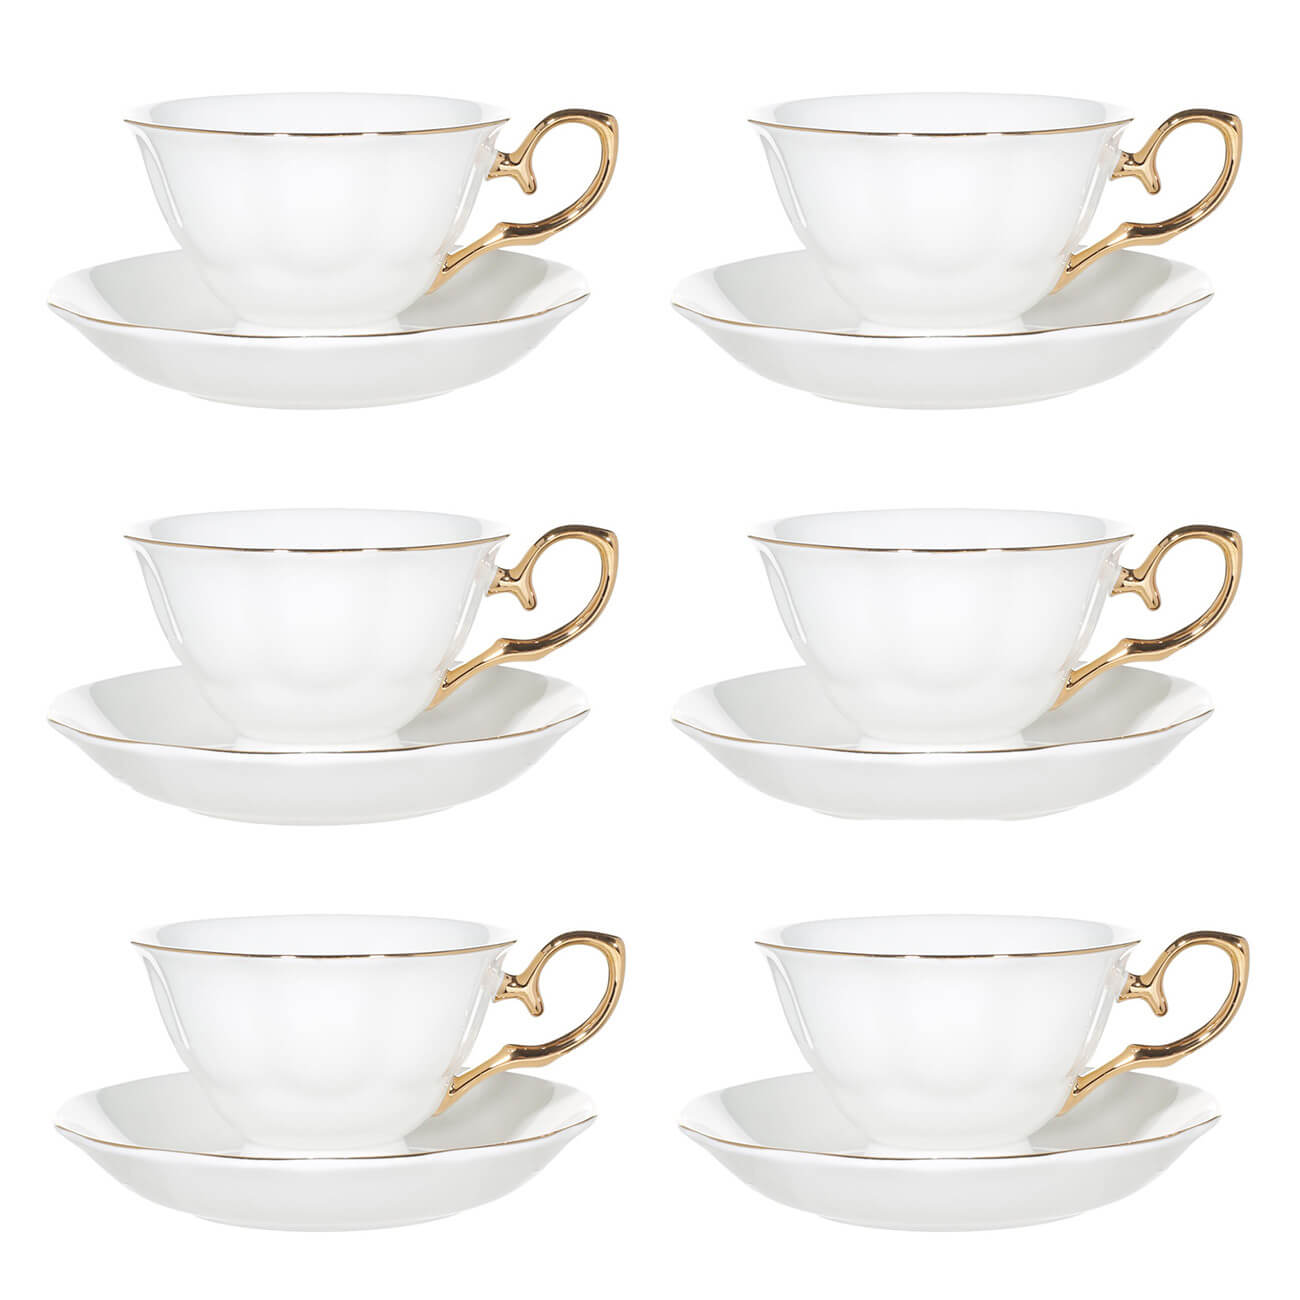 Пара чайная, 6 перс, 12 пр, 180 мл, фарфор F, бело-золотистая, Premium Gold чайная пара tassen talent wolfgang amadeus mozart